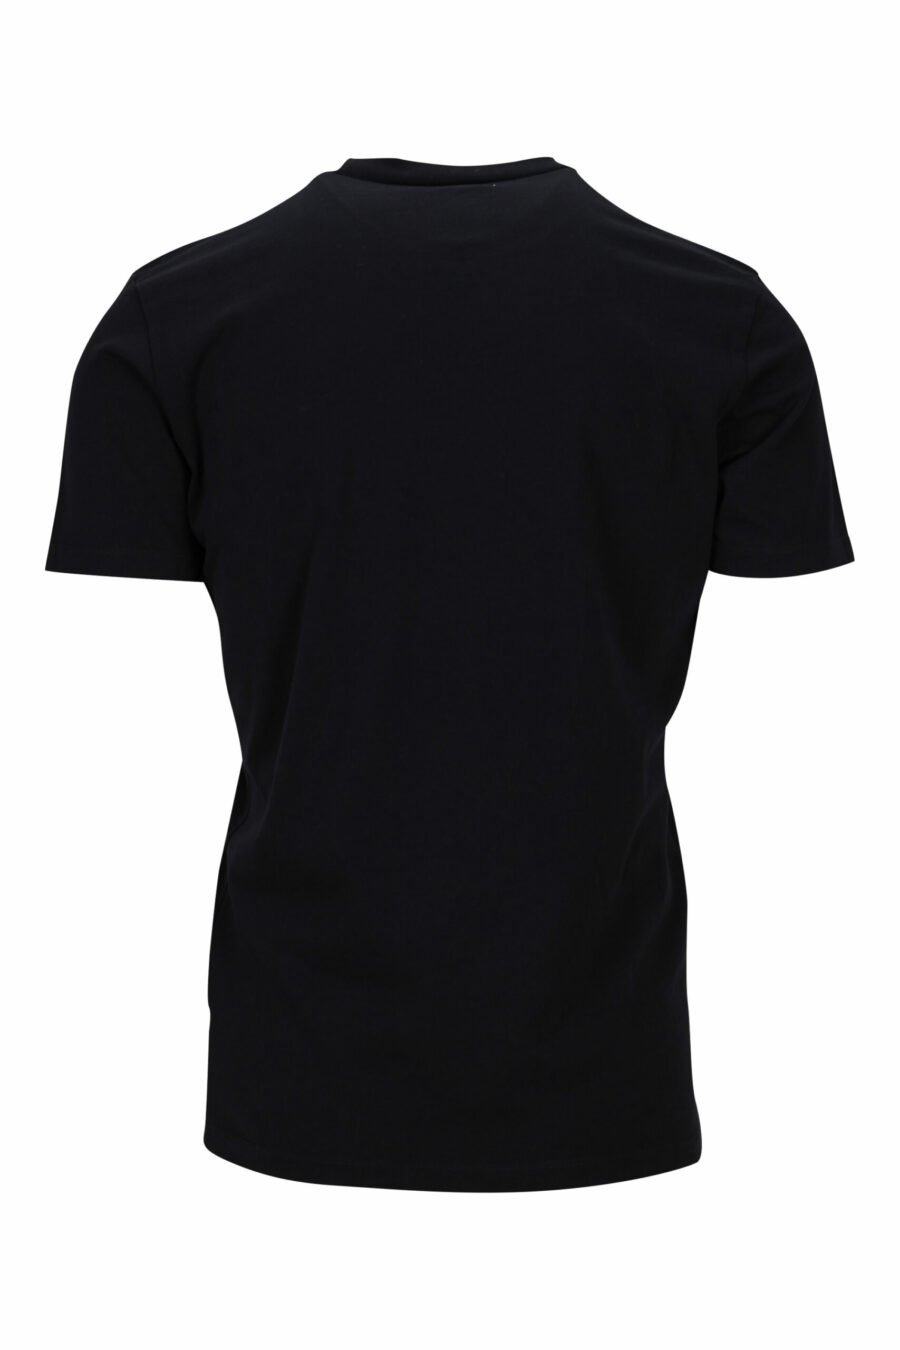 Camiseta negra con maxilogo "collegue league" - 8054148504700 1 scaled